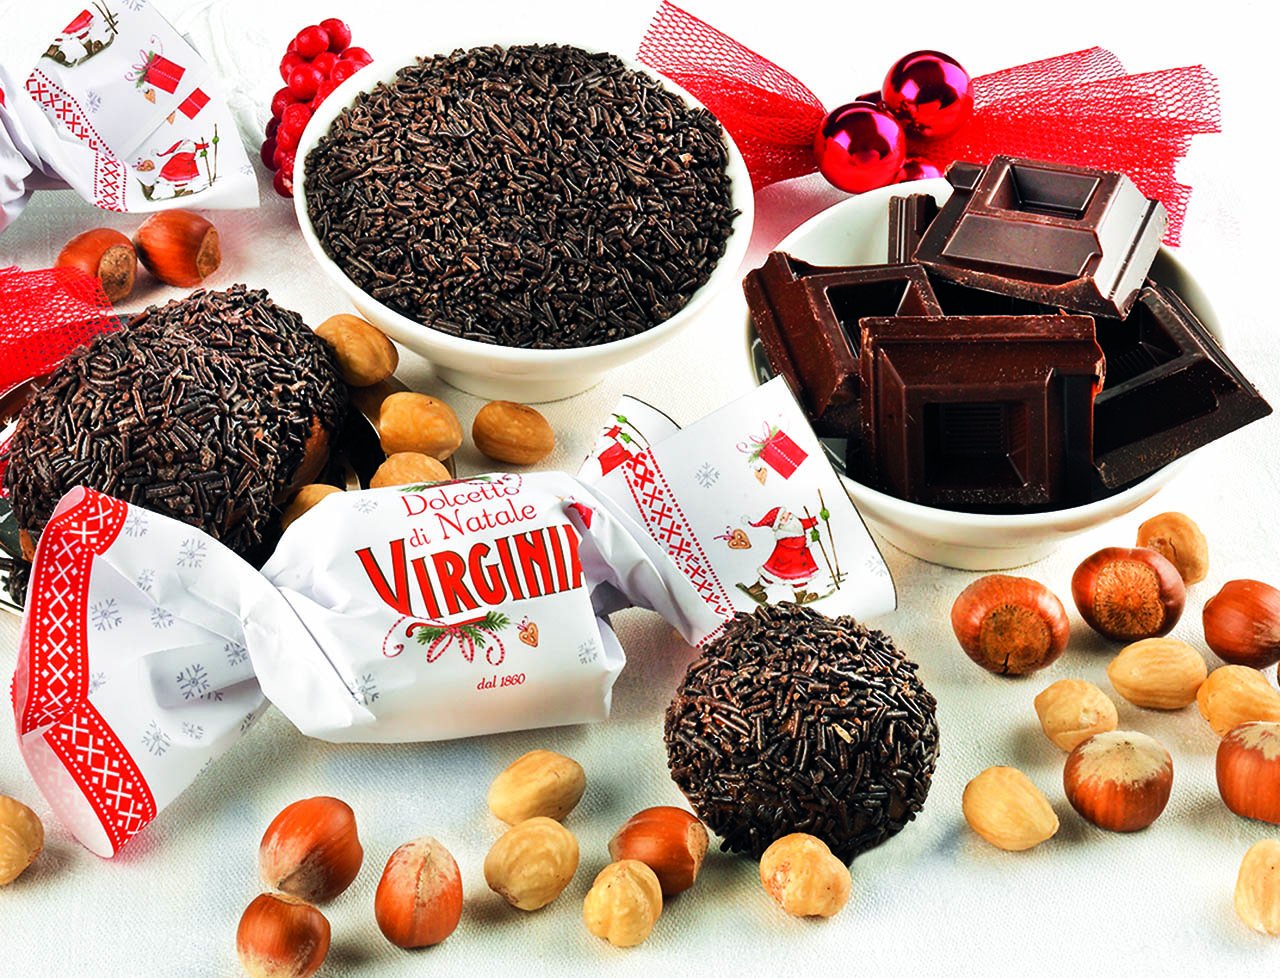 Dolcetto Virginia dolcetto di Natale al cioccolato al latte Confezione da 100gr - Dolci pensieri gift